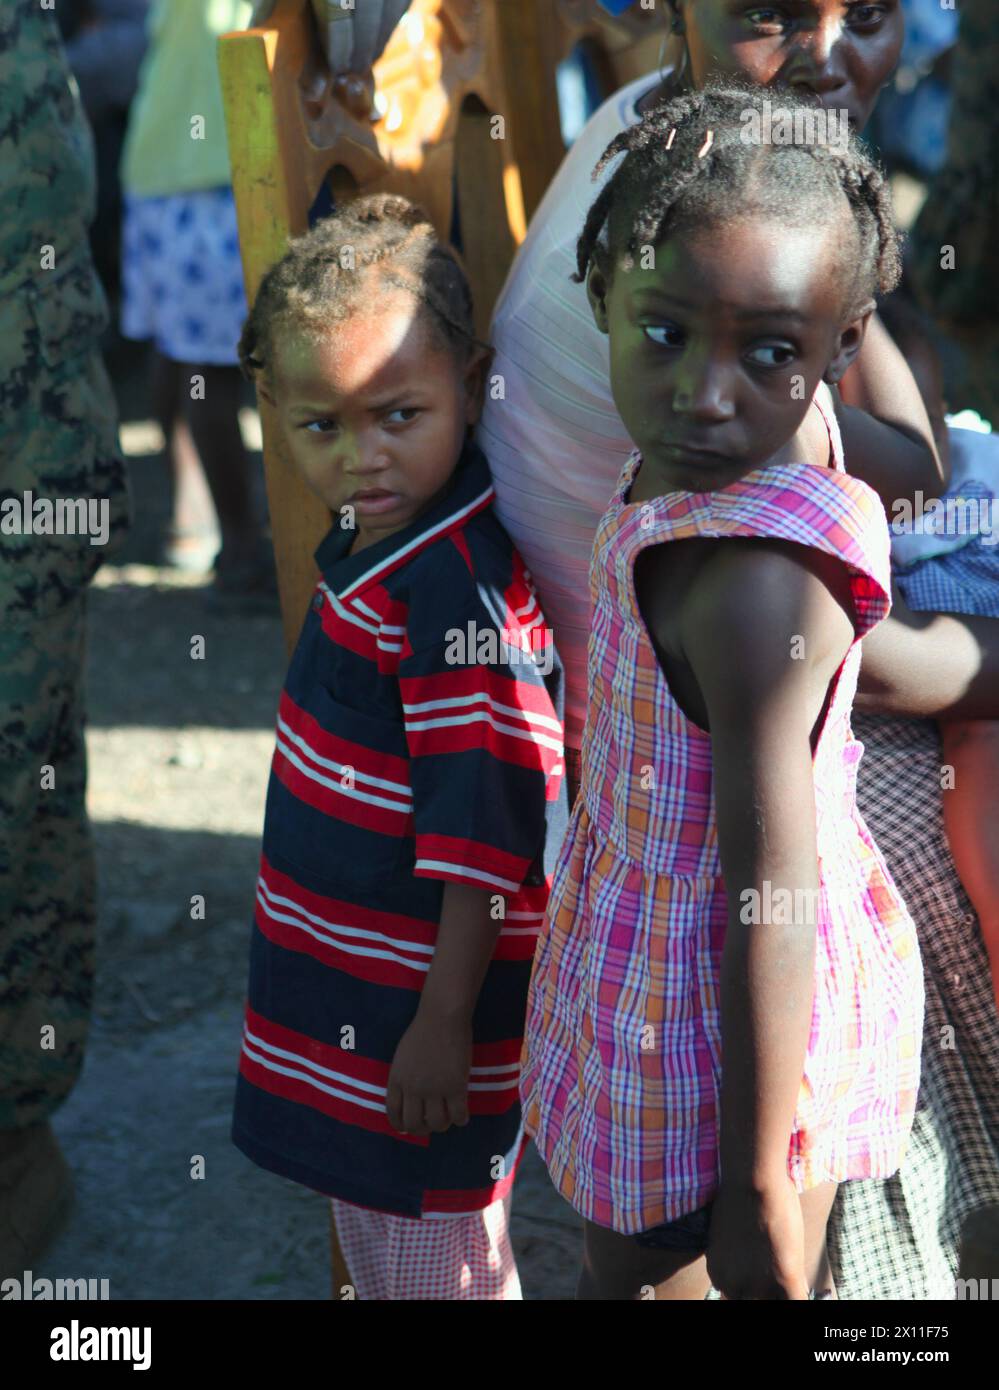 Deux filles haïtiennes se tiennent tranquillement debout alors que d'autres habitants reçoivent des soins médicaux de cadavres avec l'équipe de débarquement du bataillon, le 3e bataillon, le 2e régiment de Marines, la 22e unité expéditionnaire des Marines, lors d'une mission d'aide médicale à Dano, Haïti, le 28 janvier 2010. La mission médicale faisait partie des efforts continus de la 22e MEU pour fournir des secours à l'appui de l'opération réponse unifiée. Banque D'Images